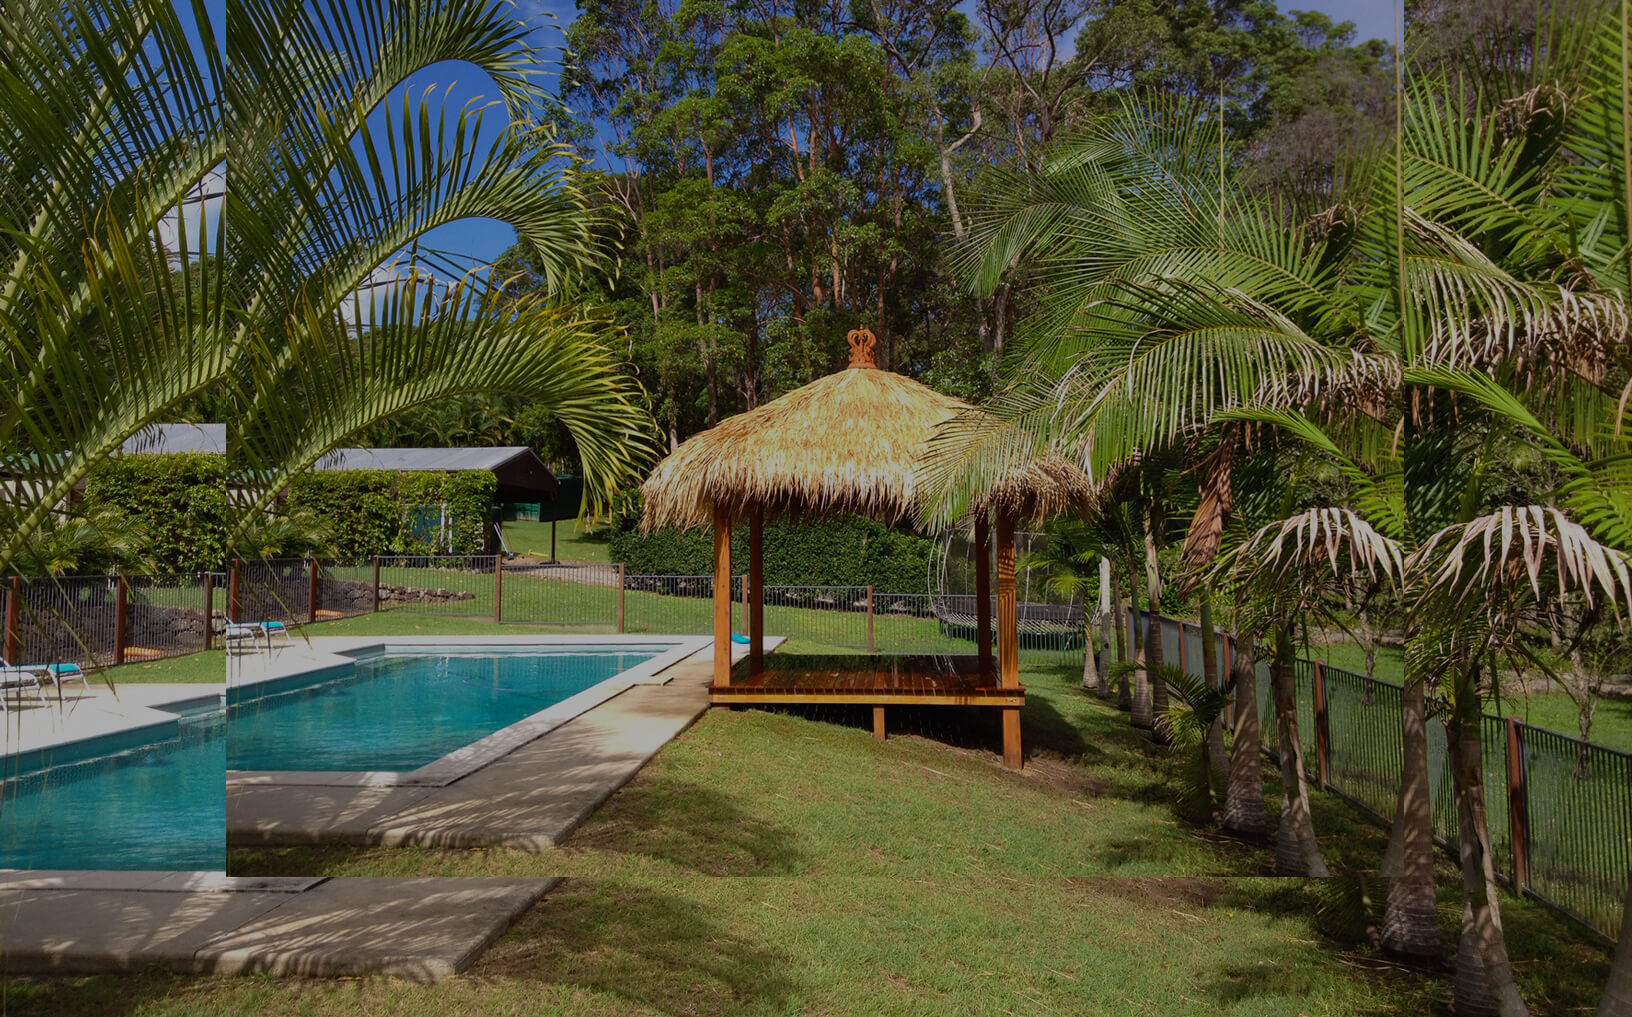 Bali hut gazebo but a pool